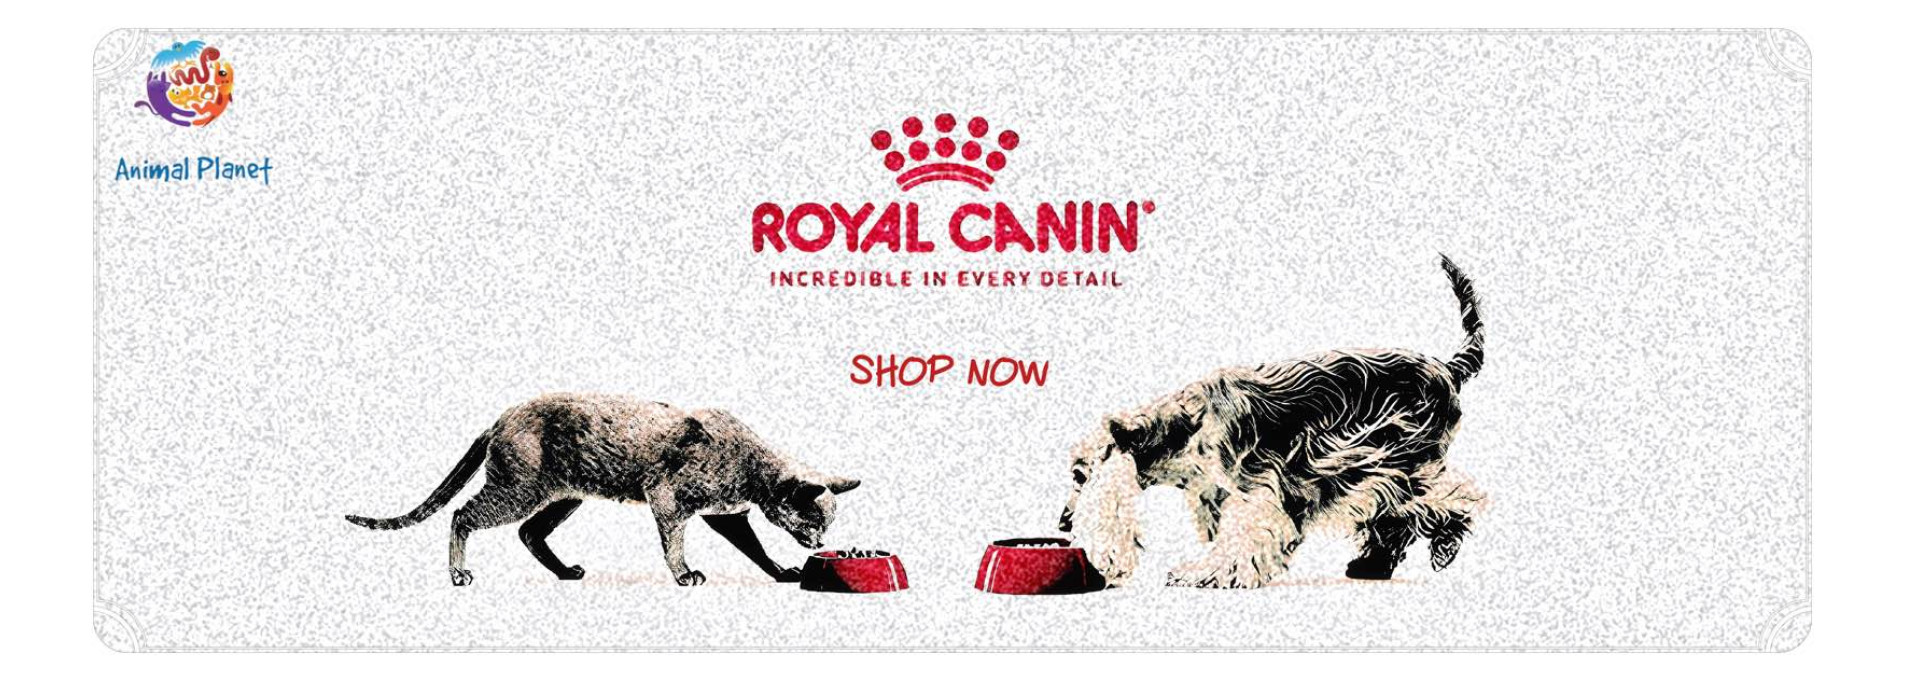 royal canin banner2